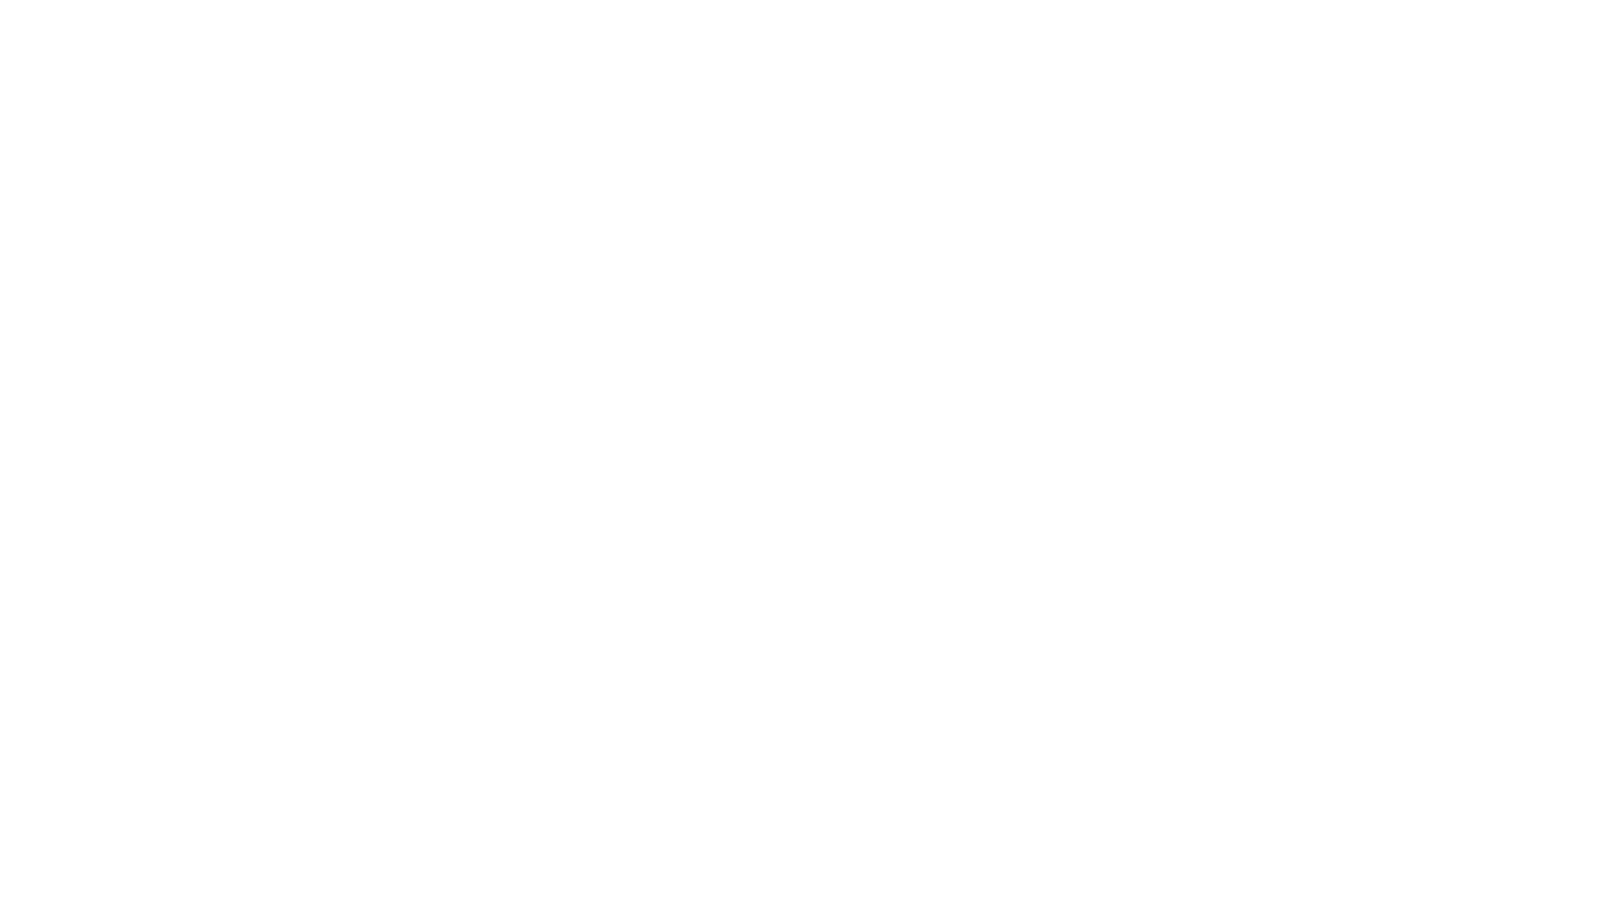 Si deseas conocer algunos detalles más de la jugabilidad de Ghostbusters: Spirits Unleashed: LINK SENSUAL AQUI

Para más noticias de videojuegos online: https://gomultiplayer.com

Si deseas conocer a quien aporta su increíble voz: https://www.twitch.tv/soulpowert